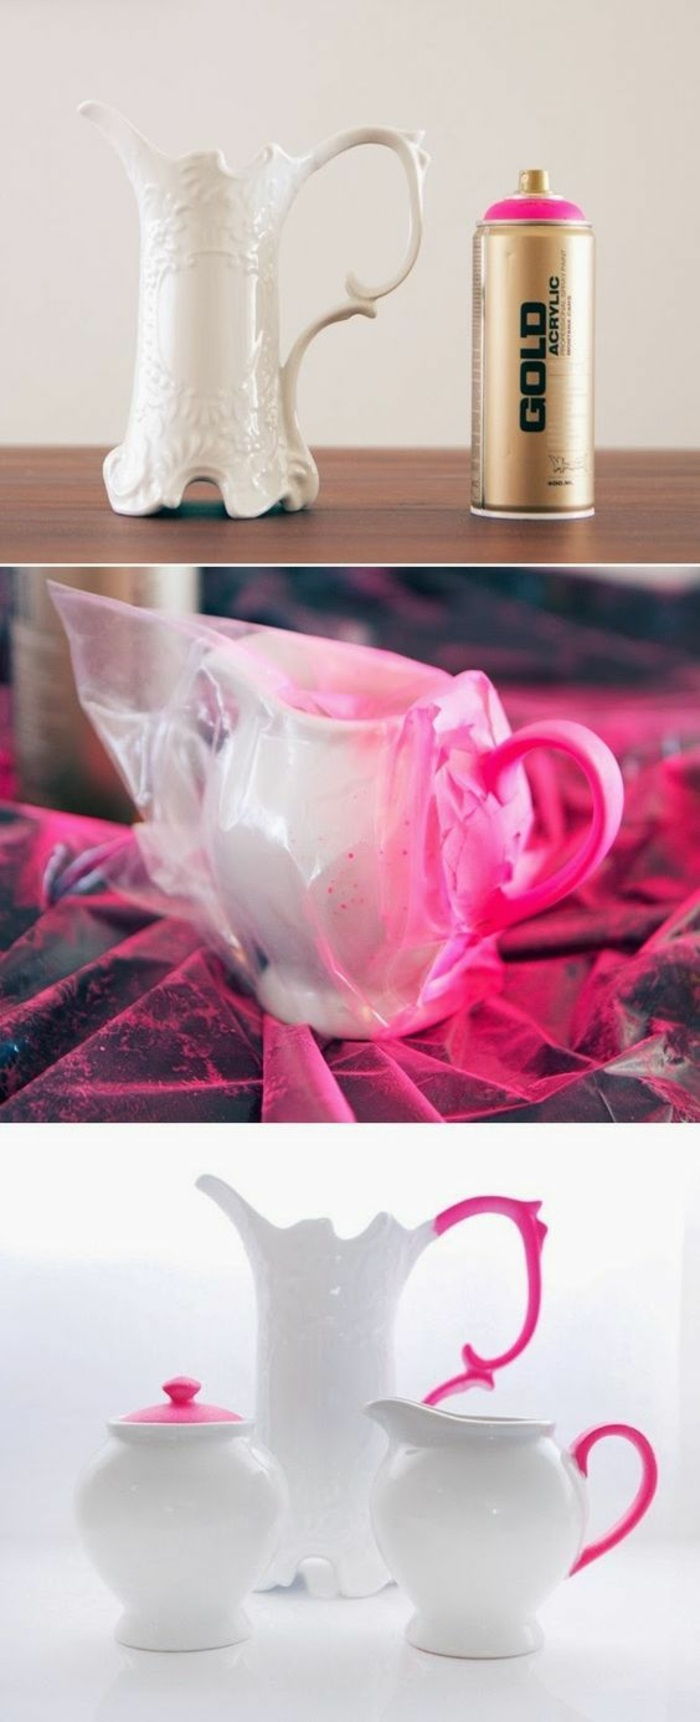 Vitt porslinporslin dekorerat med rosa spray